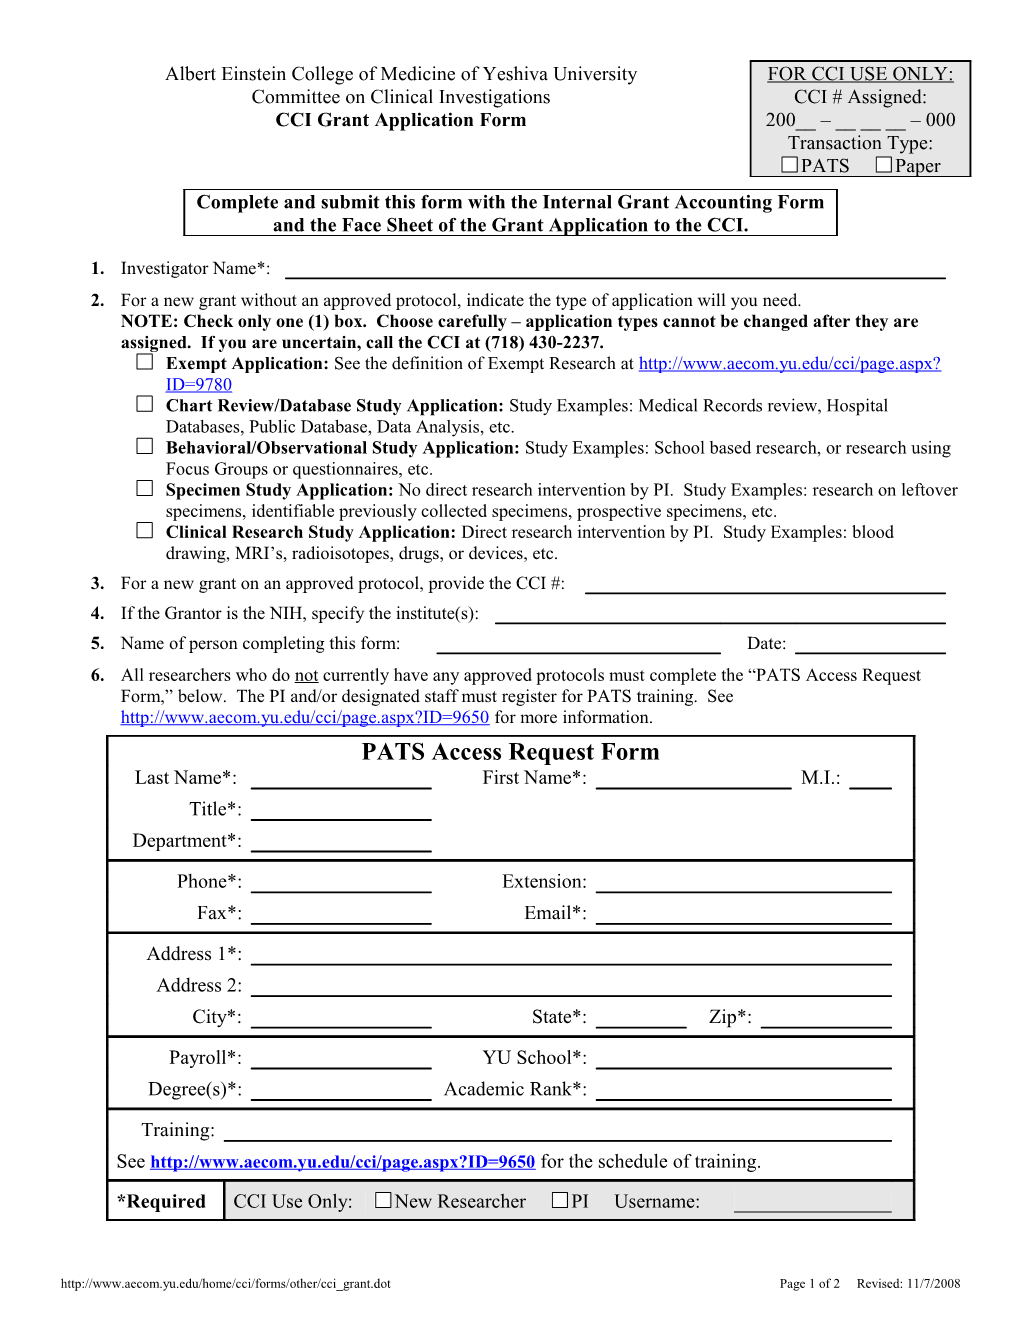 CCI Grant Application Form